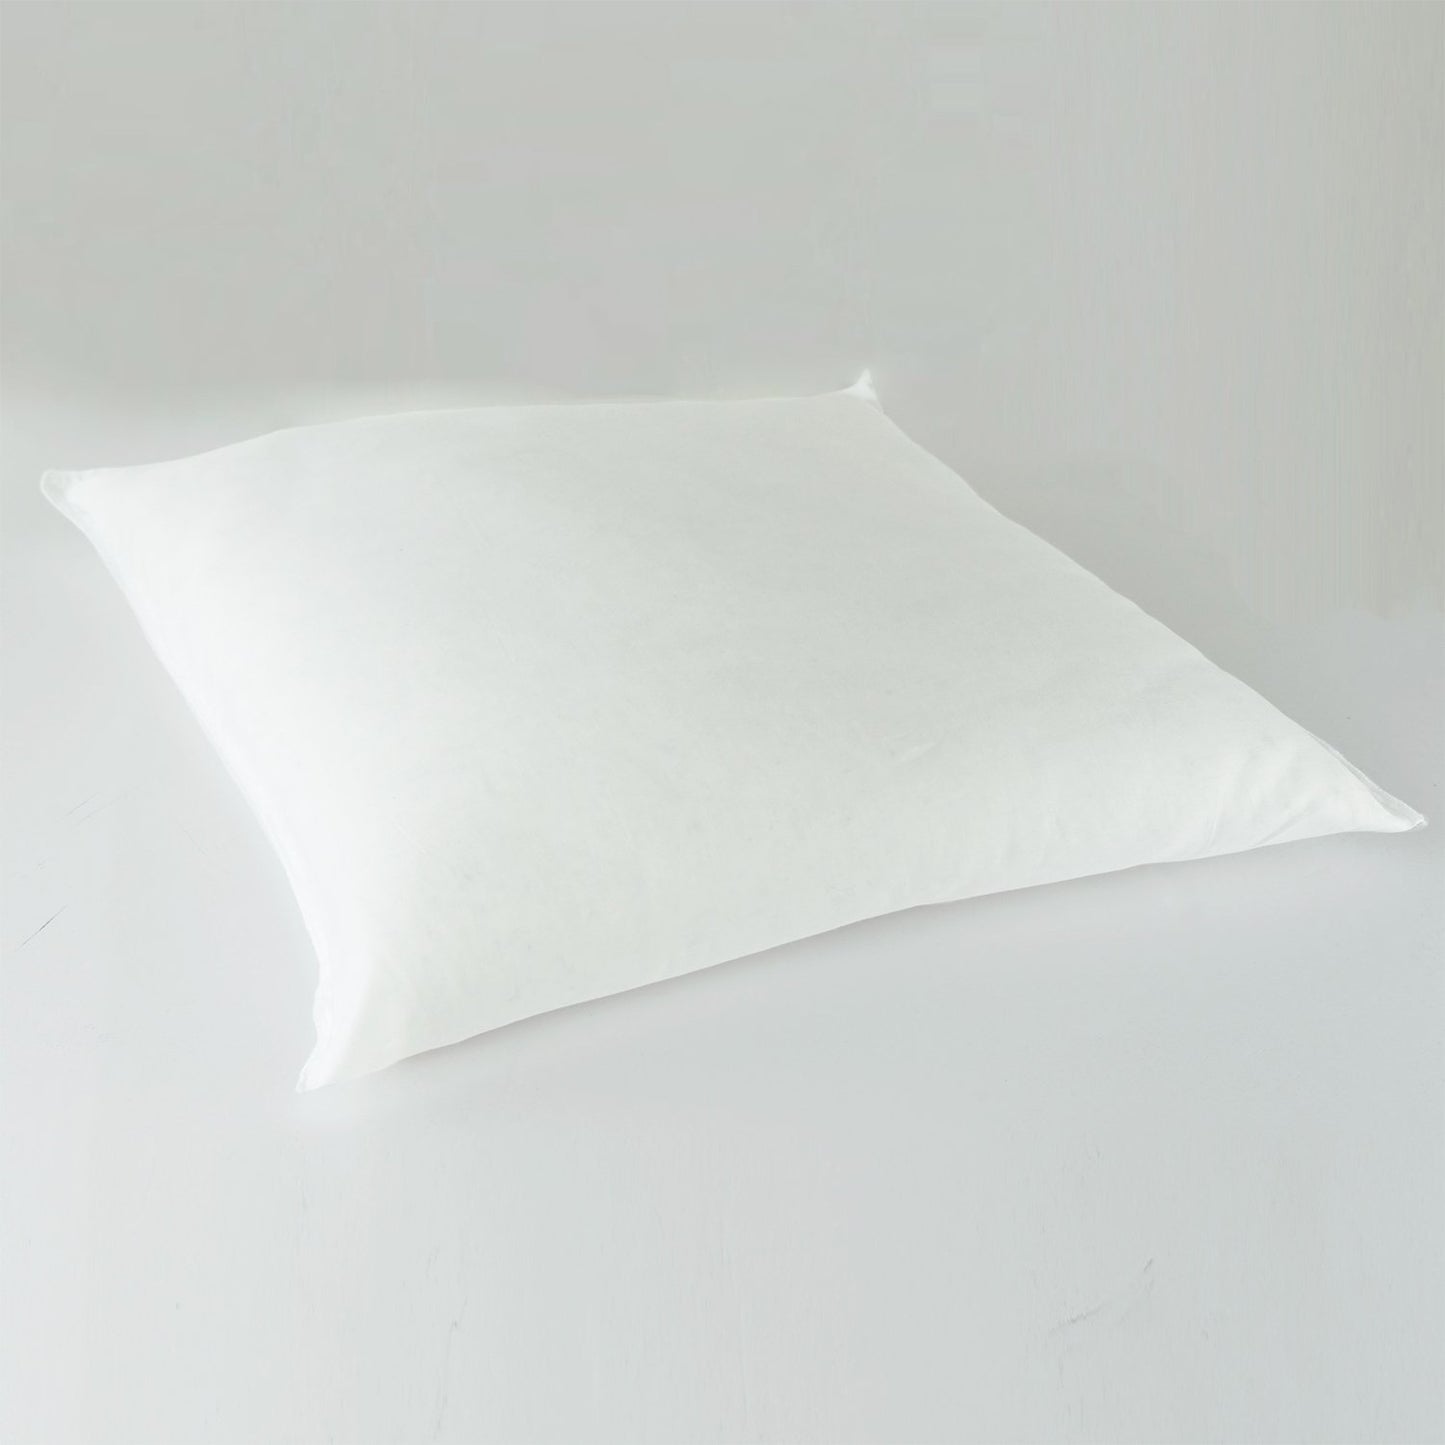 J-Life Usagi Navy Zabuton Floor Pillow_Pillows & Shams_Zabuton Floor Pillows_100% Cotton_Reversible_Handmade